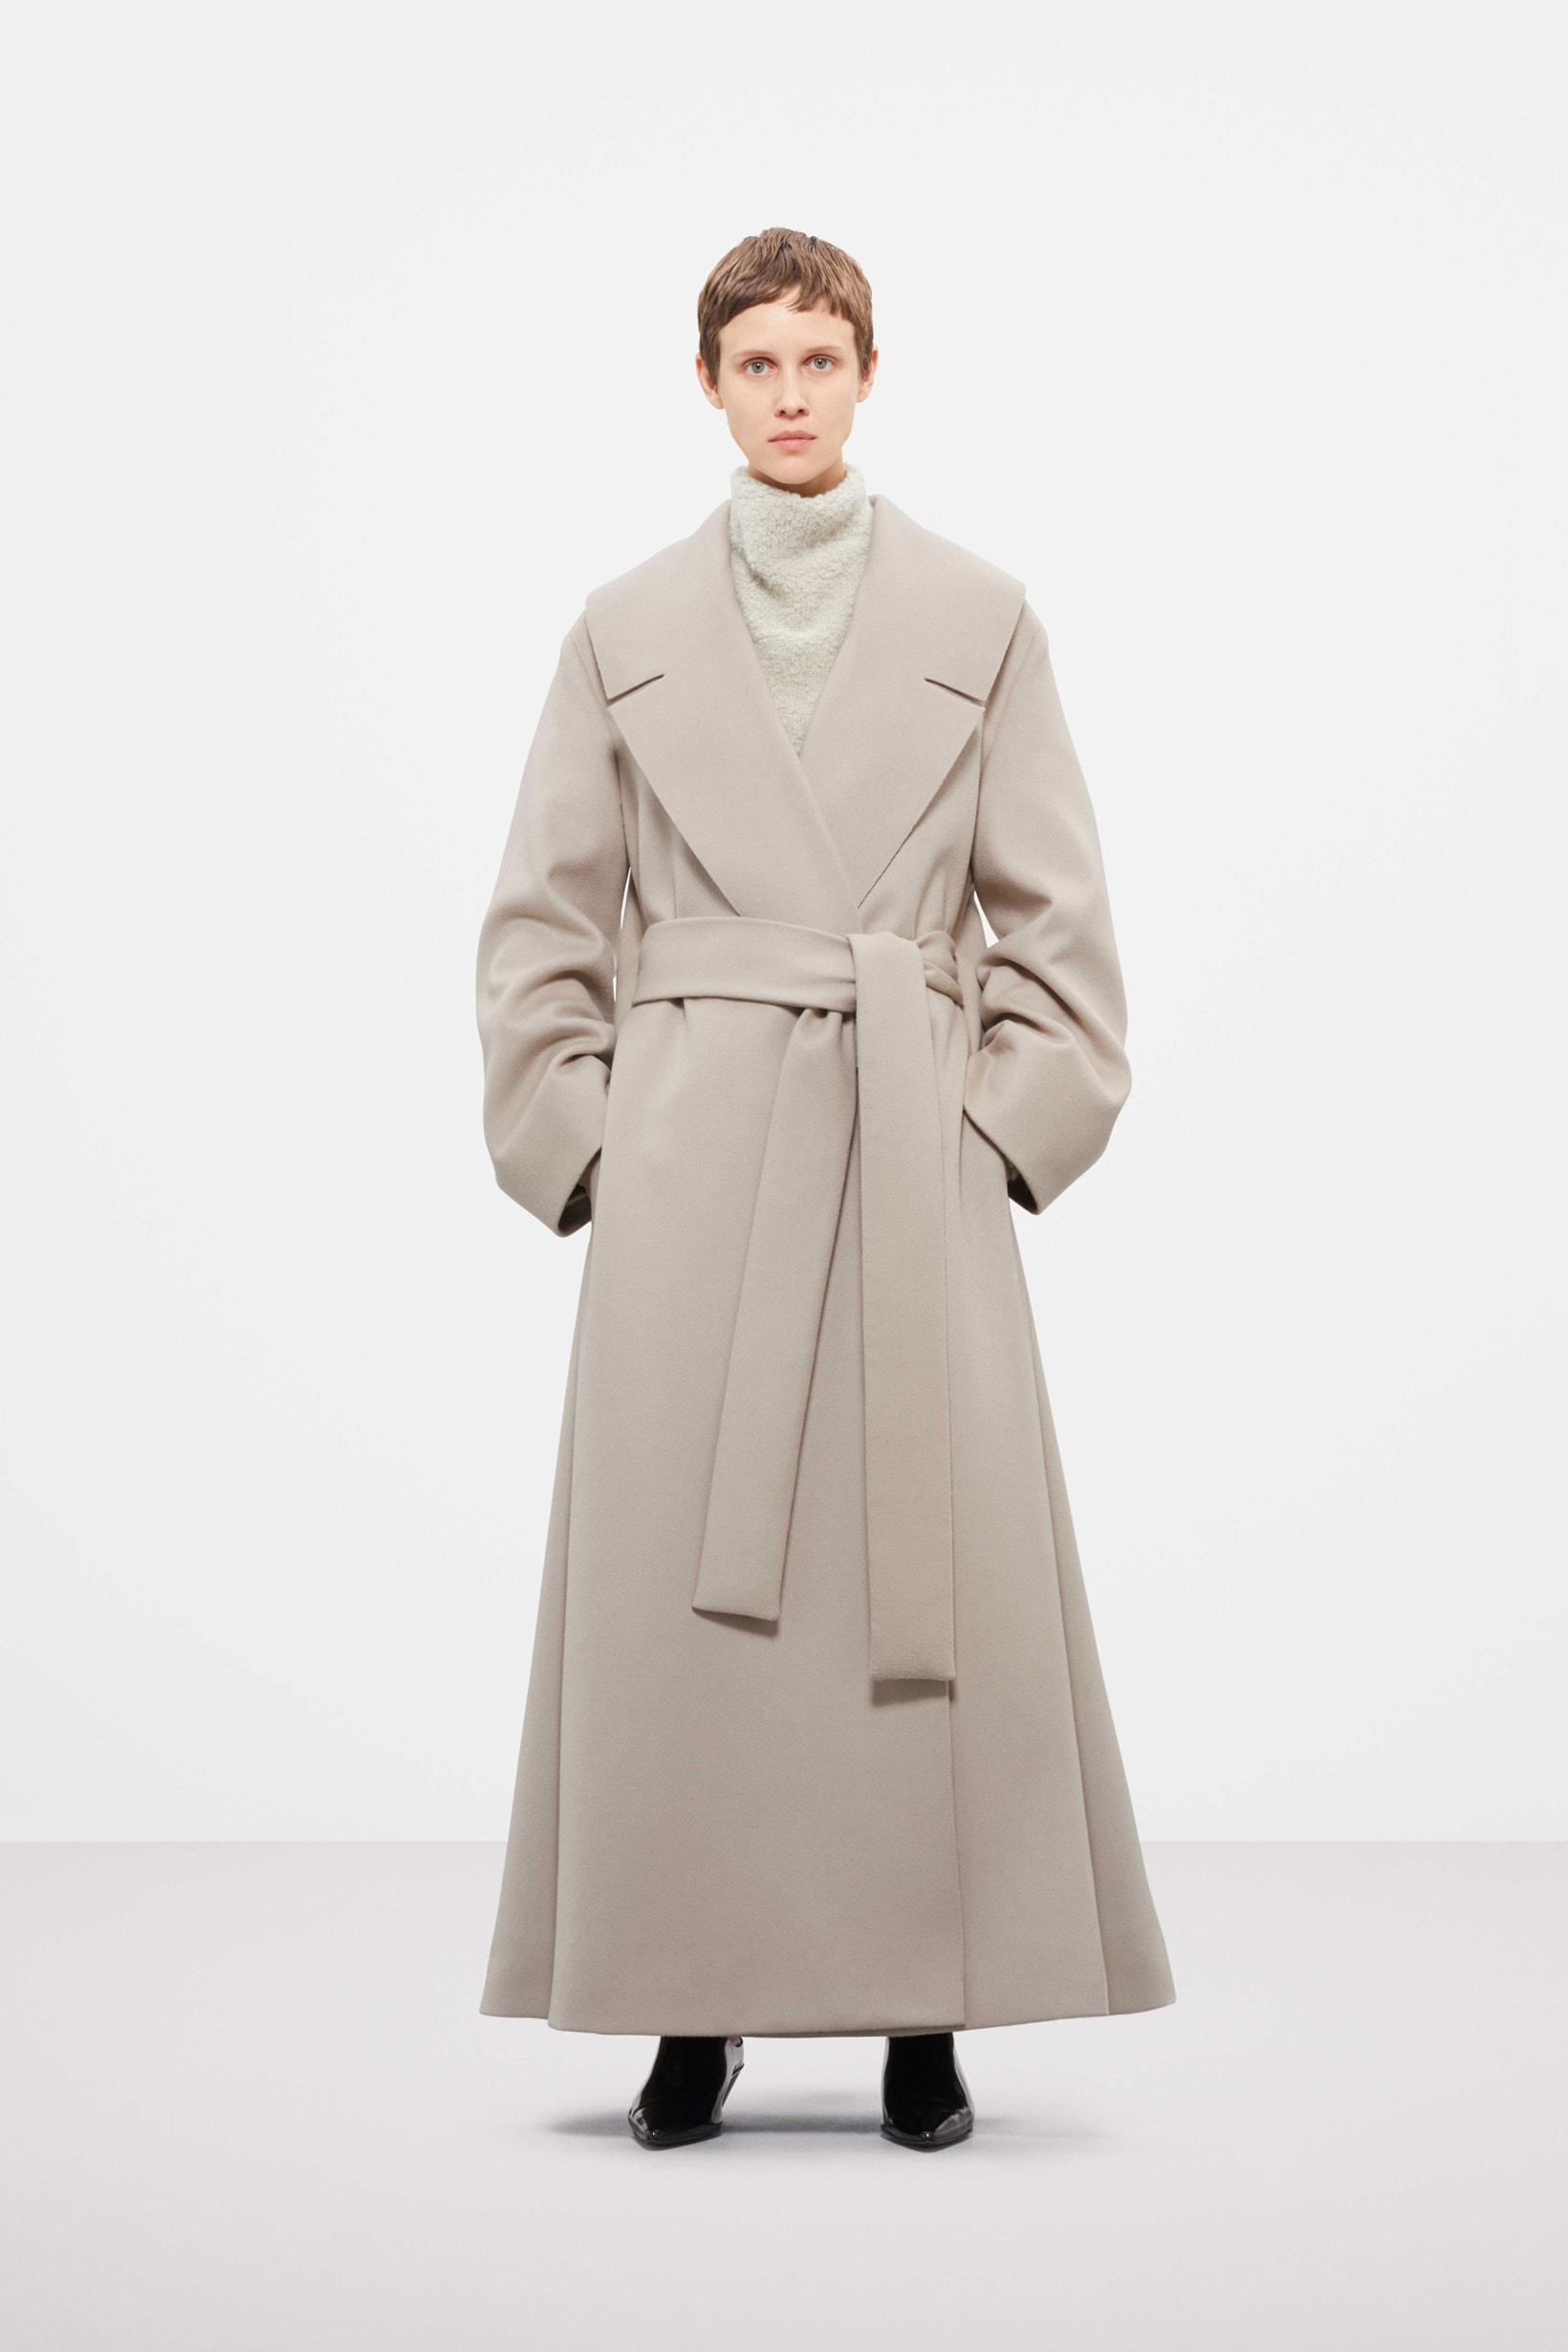 Cos Fall Winter 2019 Lookbook Coat Grey